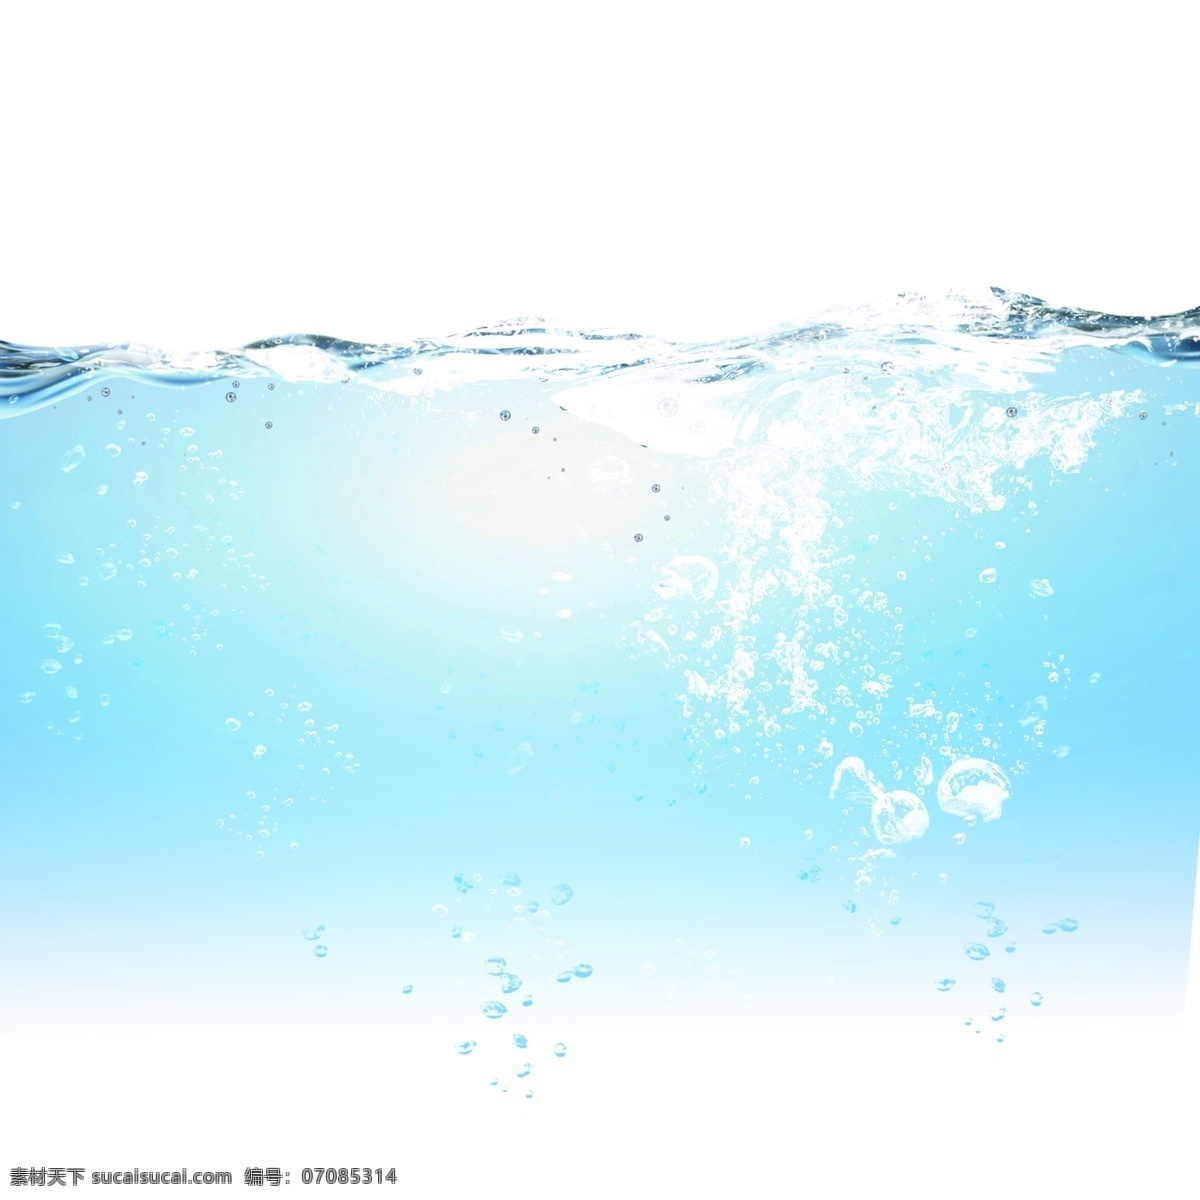 蓝色 水面 水滴 元素 蓝色水面 水花 水波纹 波浪 动感 动感水 动感水浪 动感水纹 水效果